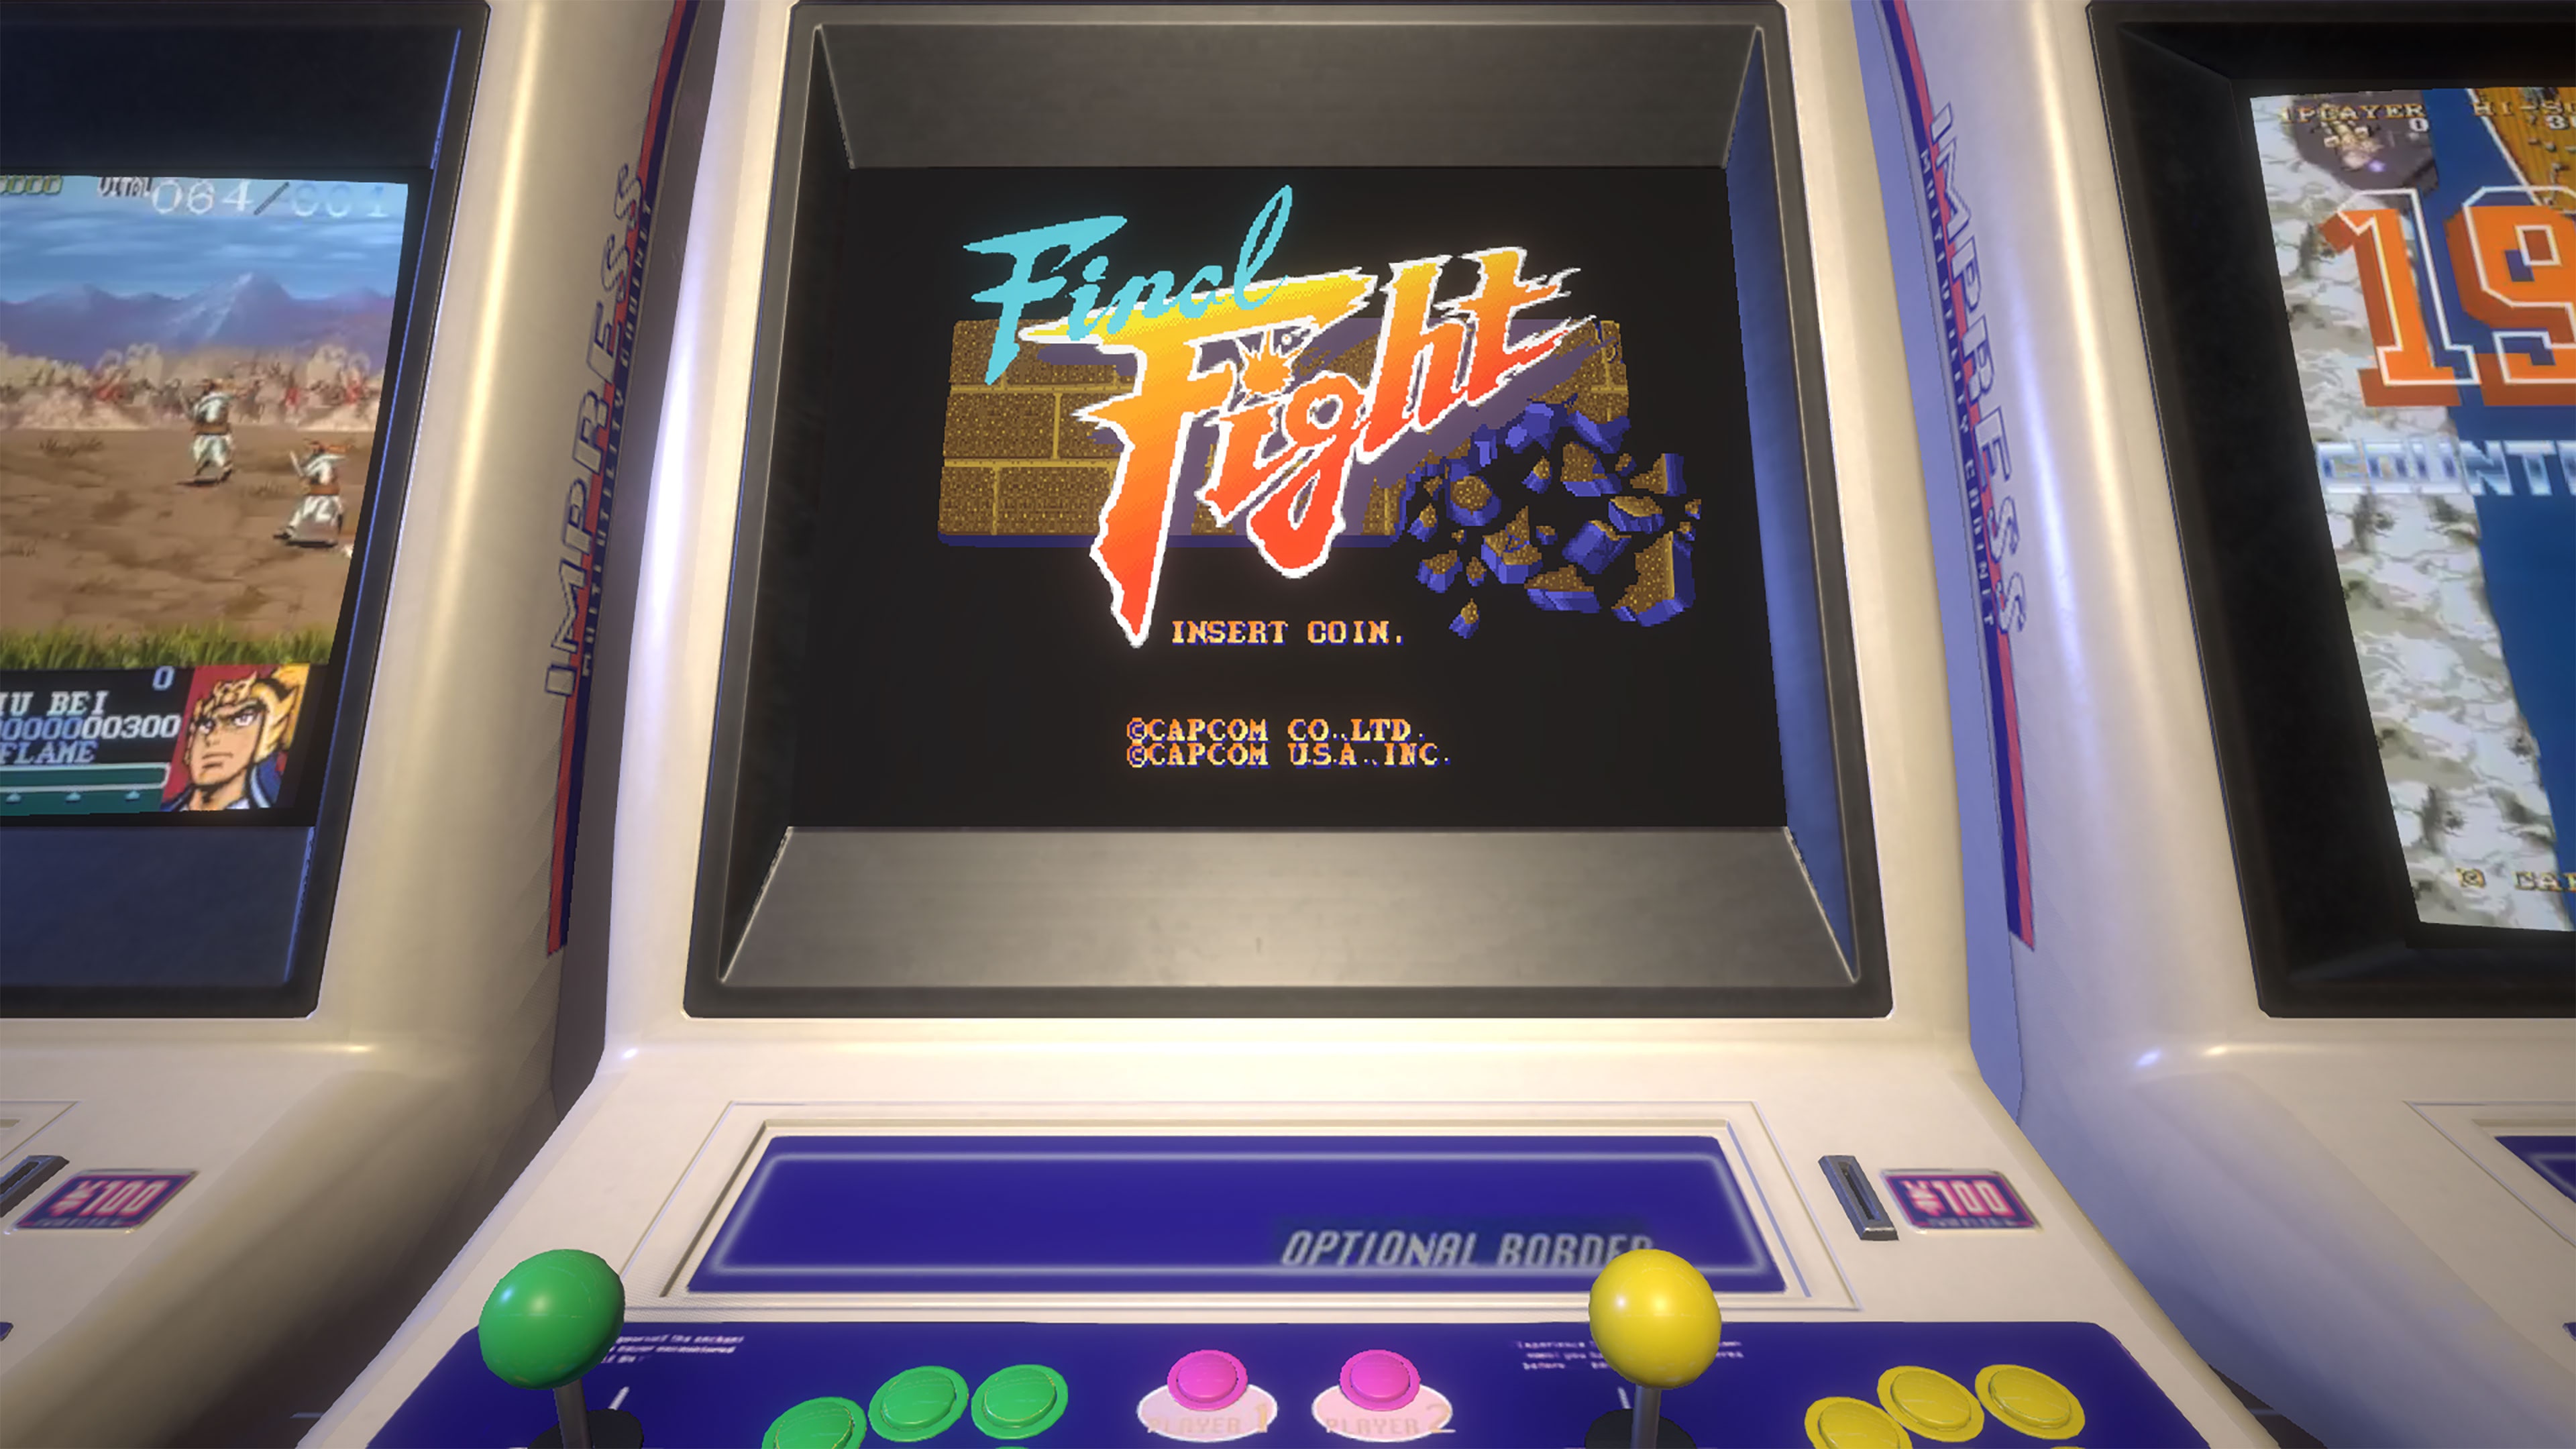 Capcom Arcade Stadium: Final Fight está gratuito para PC, Xbox, PlayStation  e Switch 